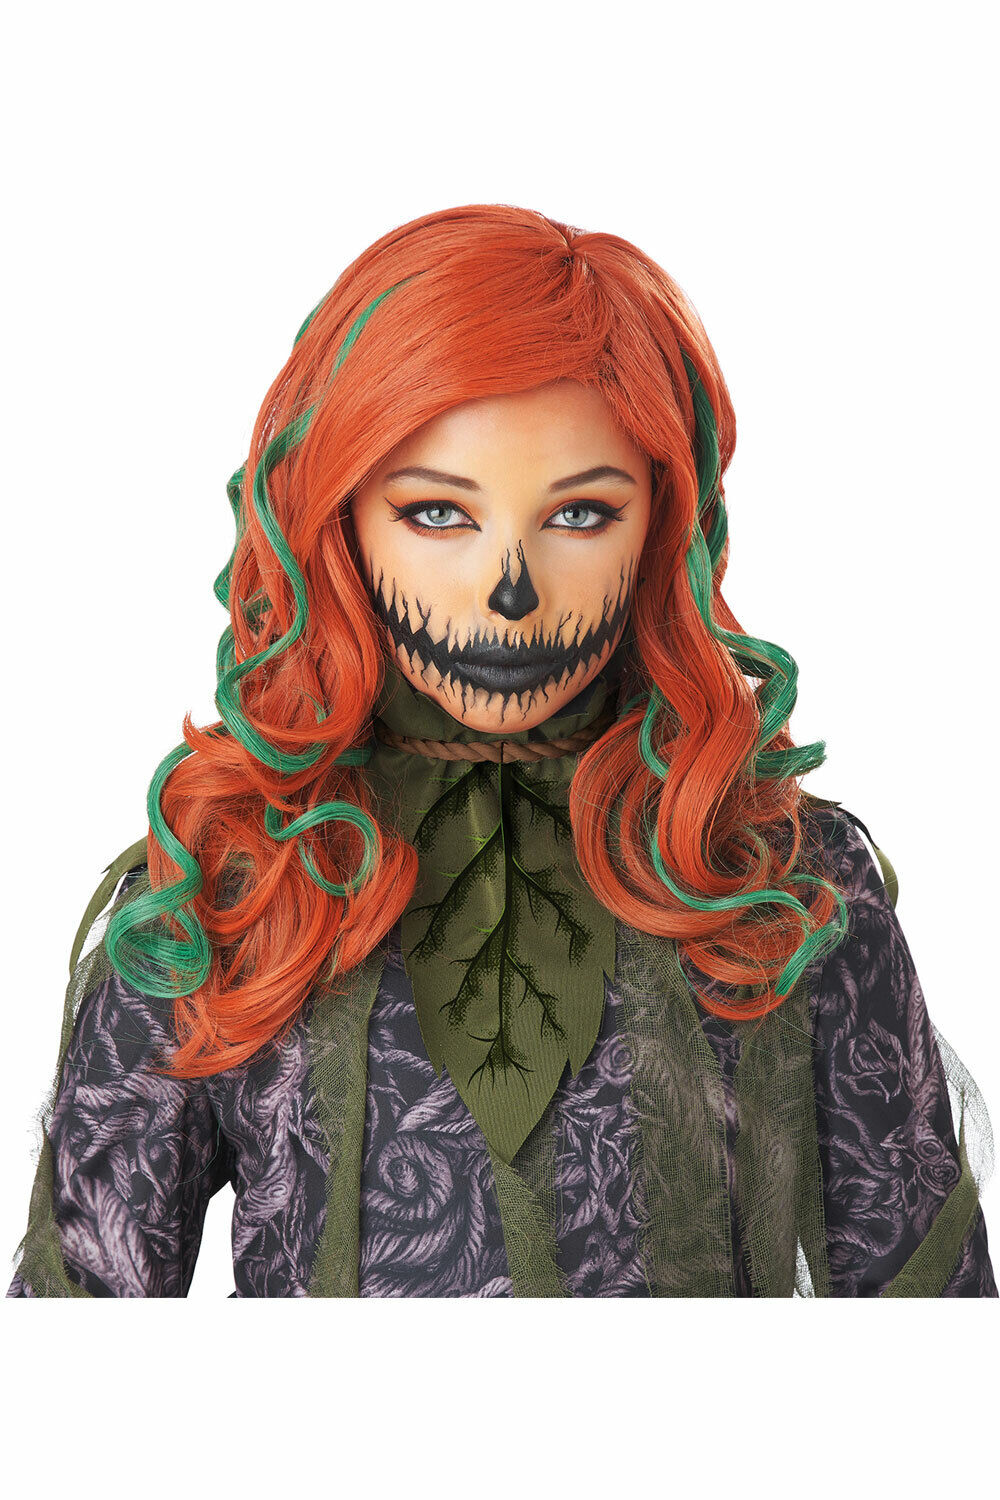 California Costume Pumpkin Vines Wig Adult Women Halloween Wig 70762